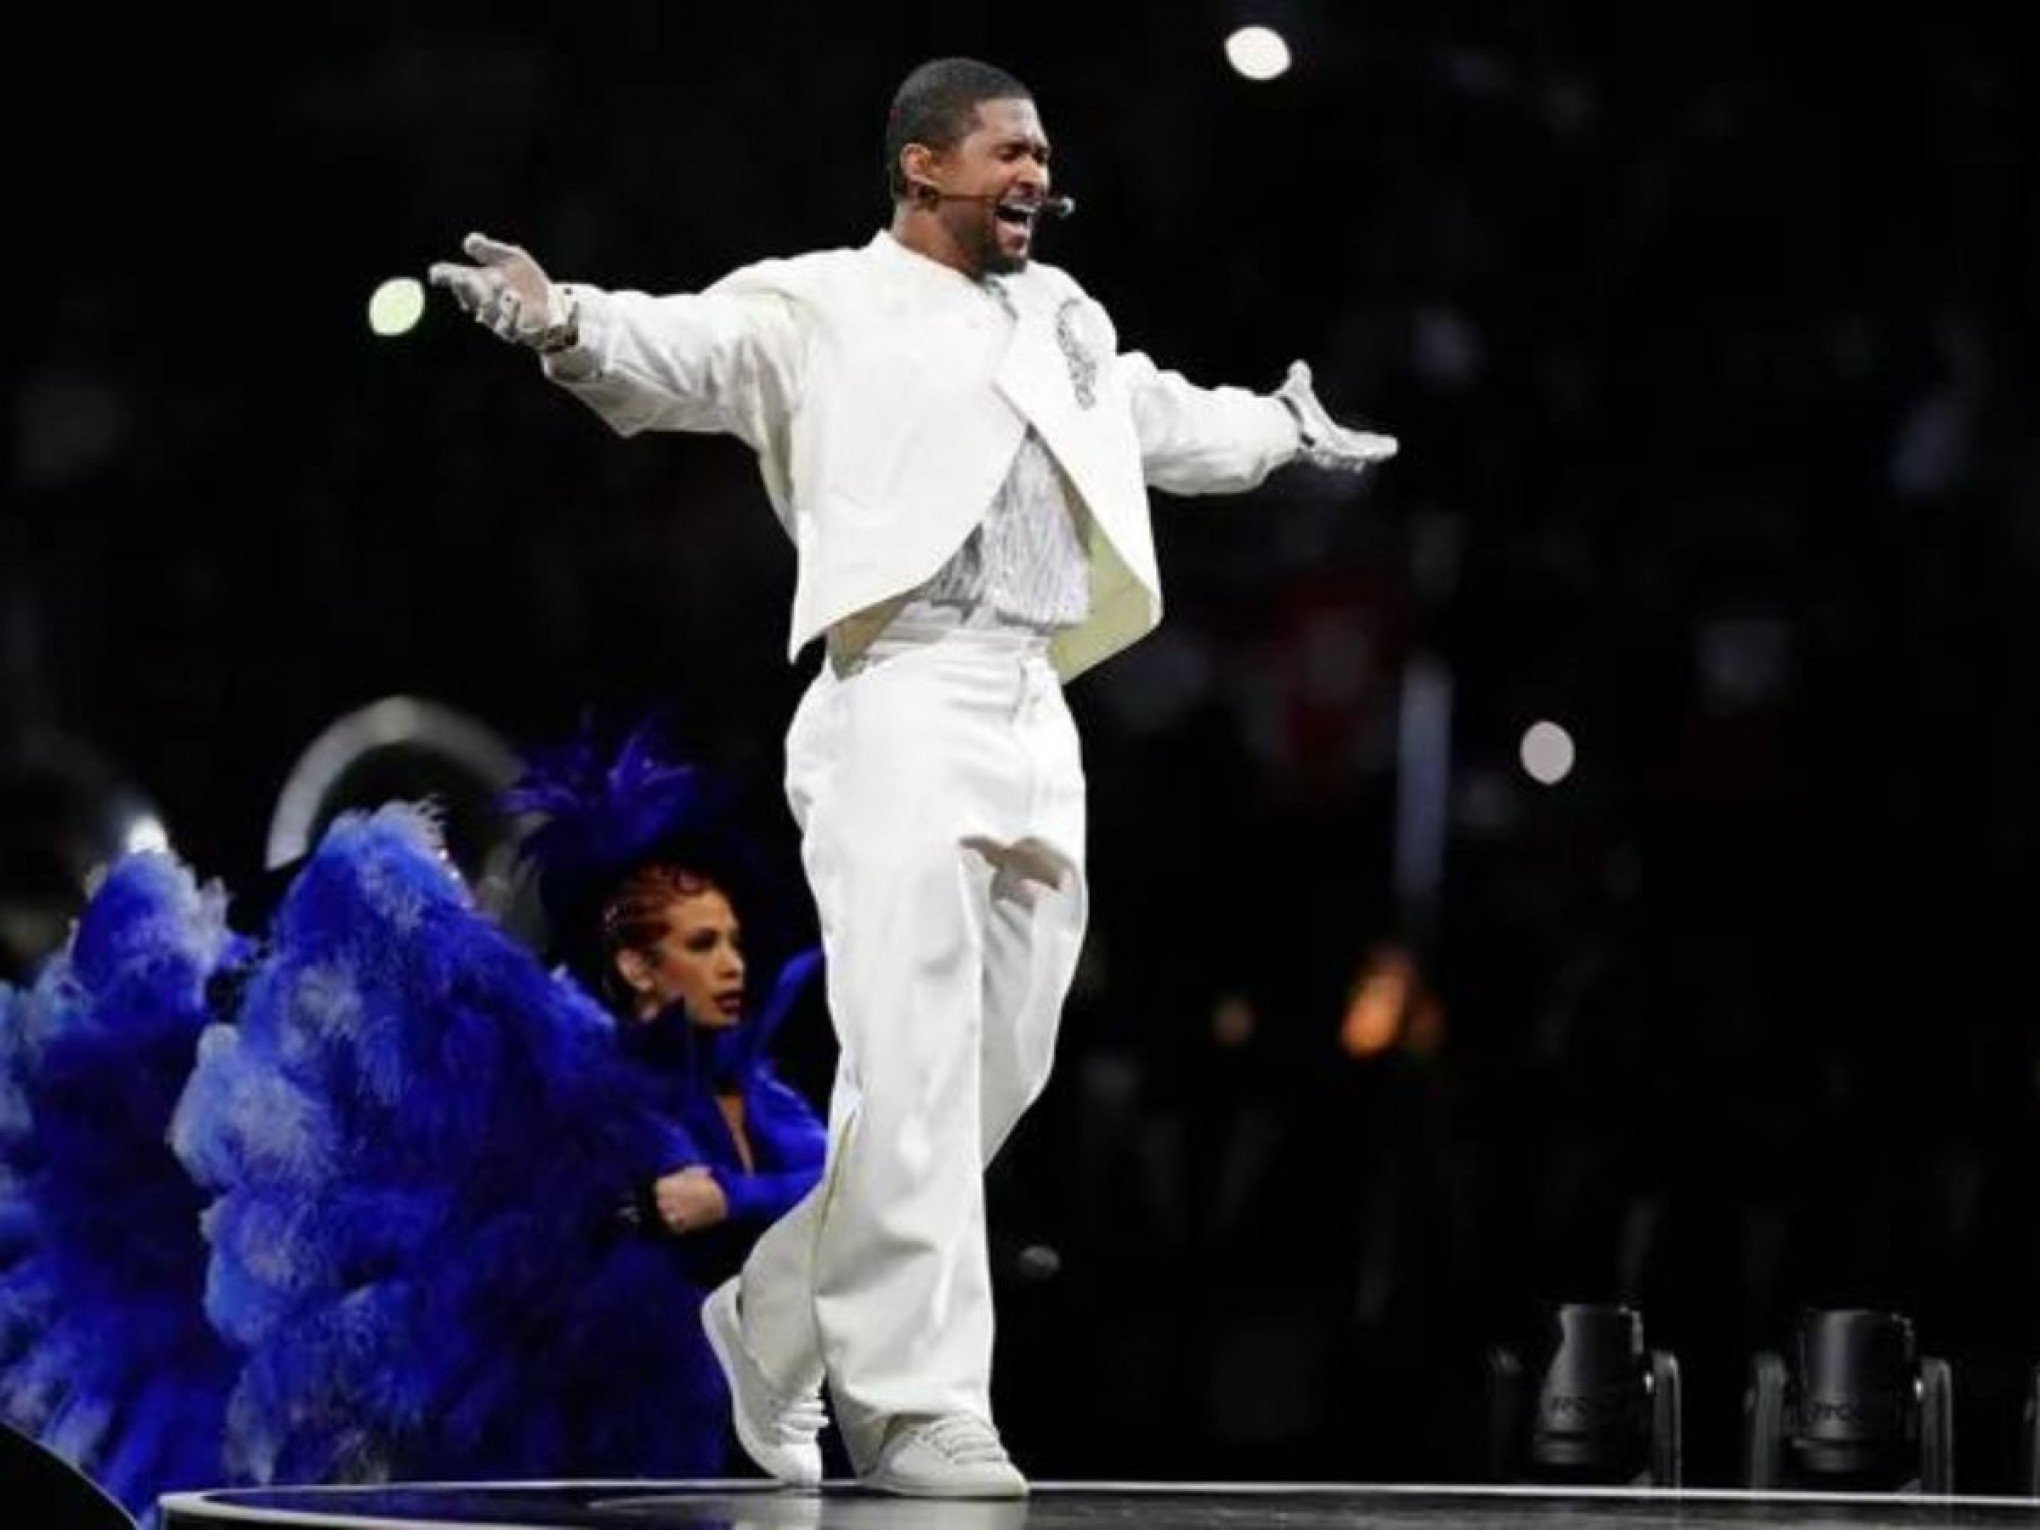 Usher levanta público do Super Bowl com espetáculo, dueto com Alicia Keys e mais; saiba como foi o show